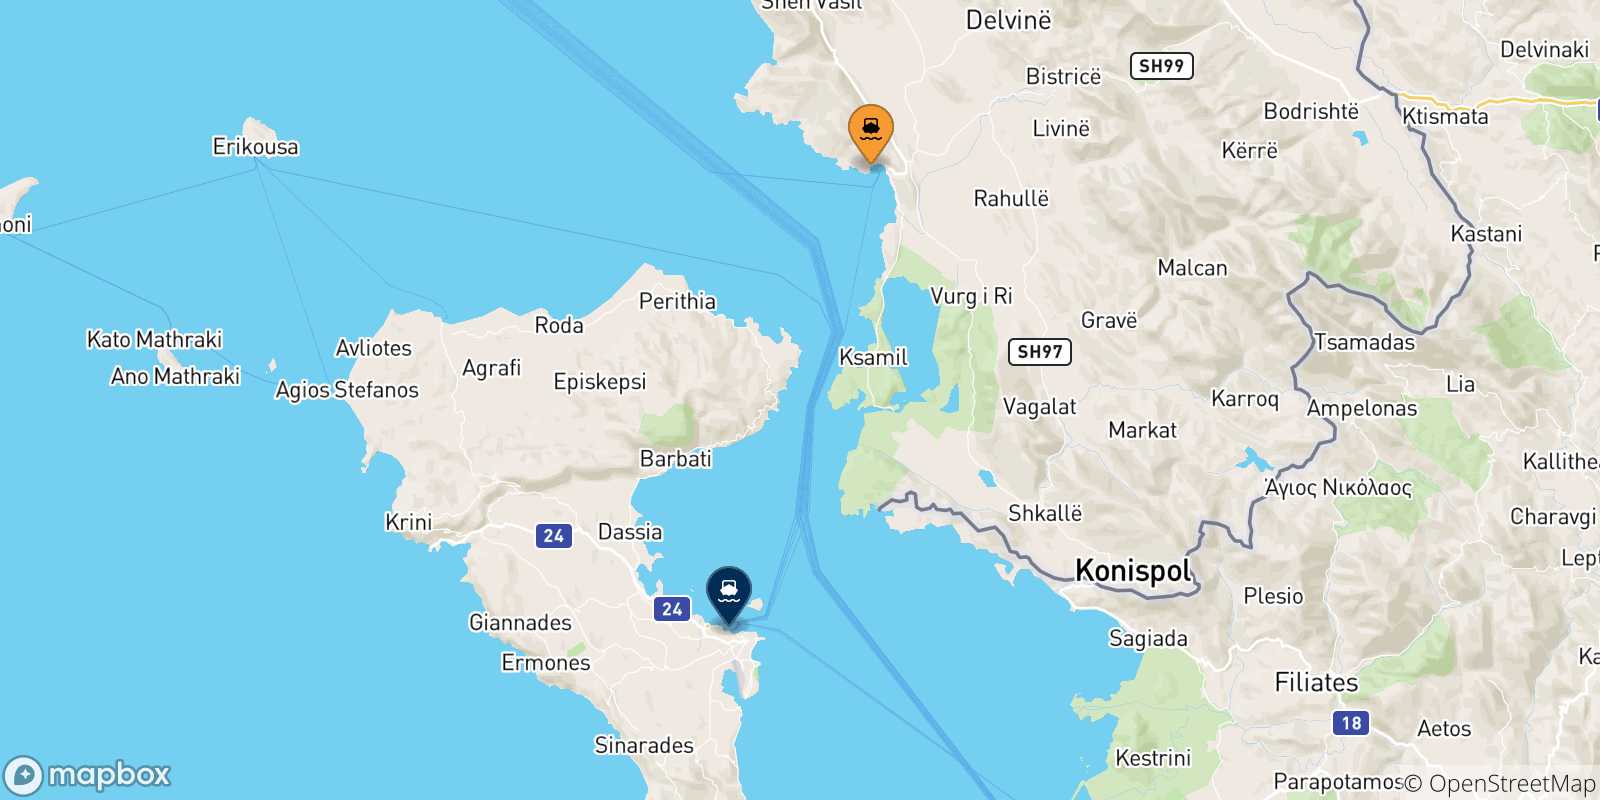 Mappa delle possibili rotte tra Saranda e la Grecia